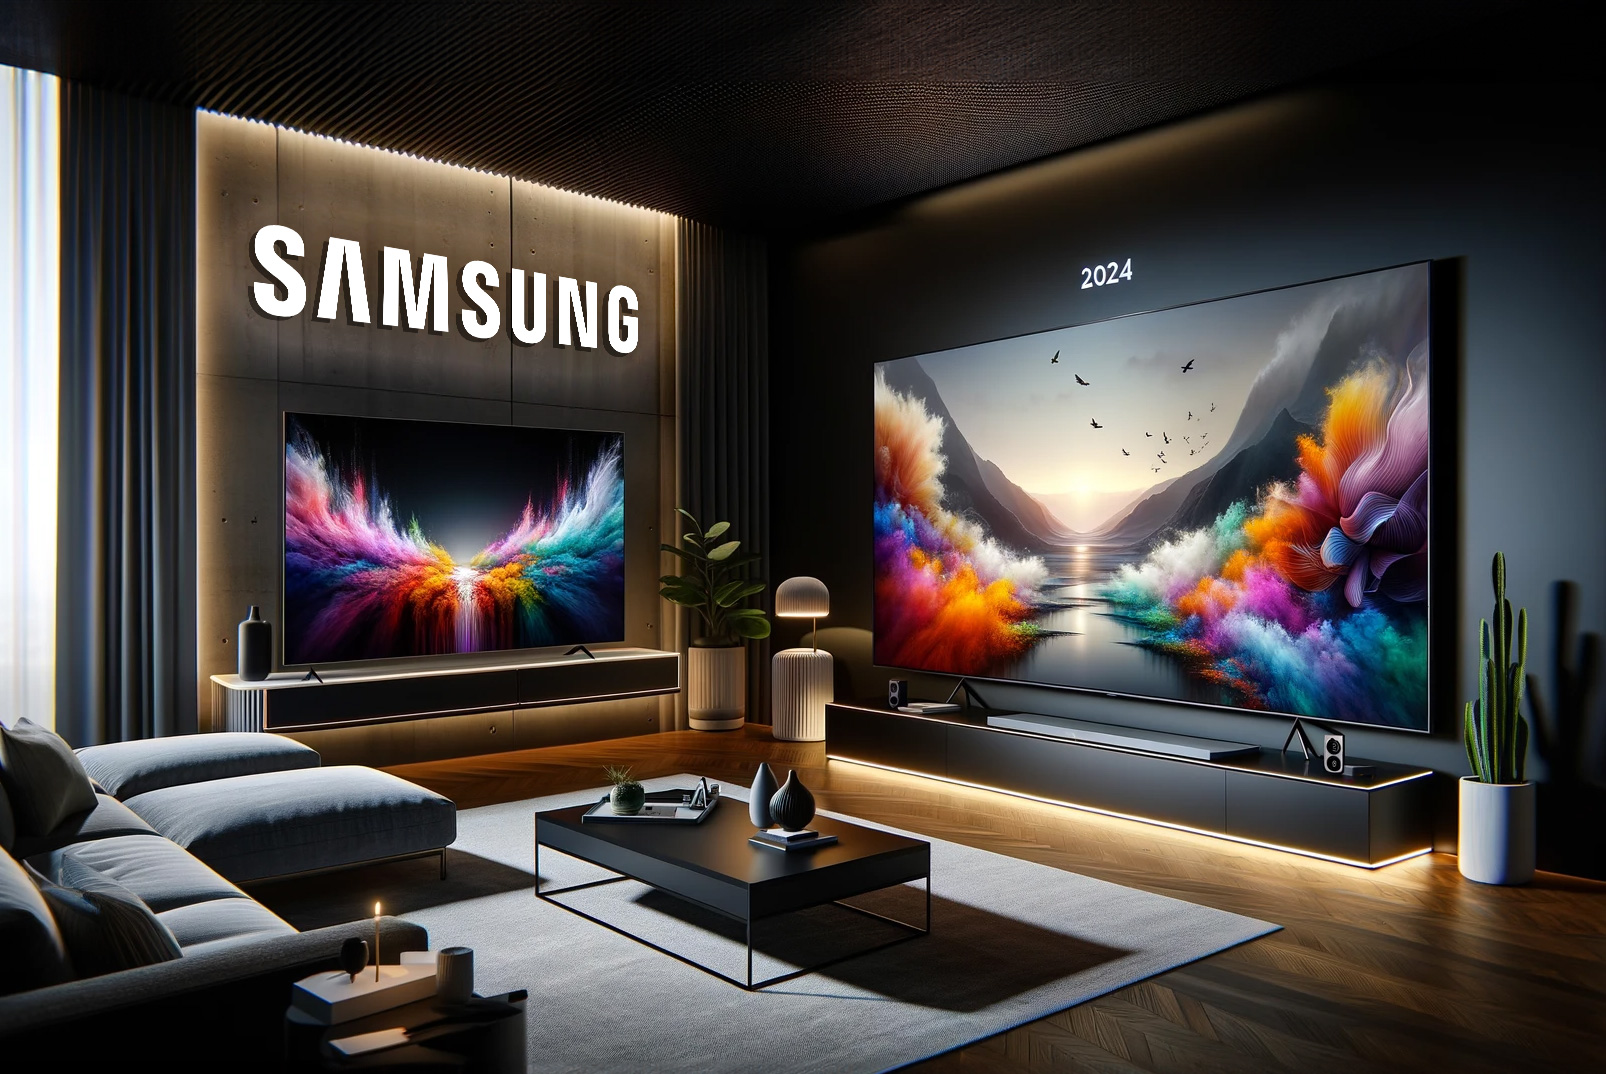 Erste Bilder und Details der Samsungs 2024 OLED und QLED Fernseher  (D-Serien) - 4K Filme